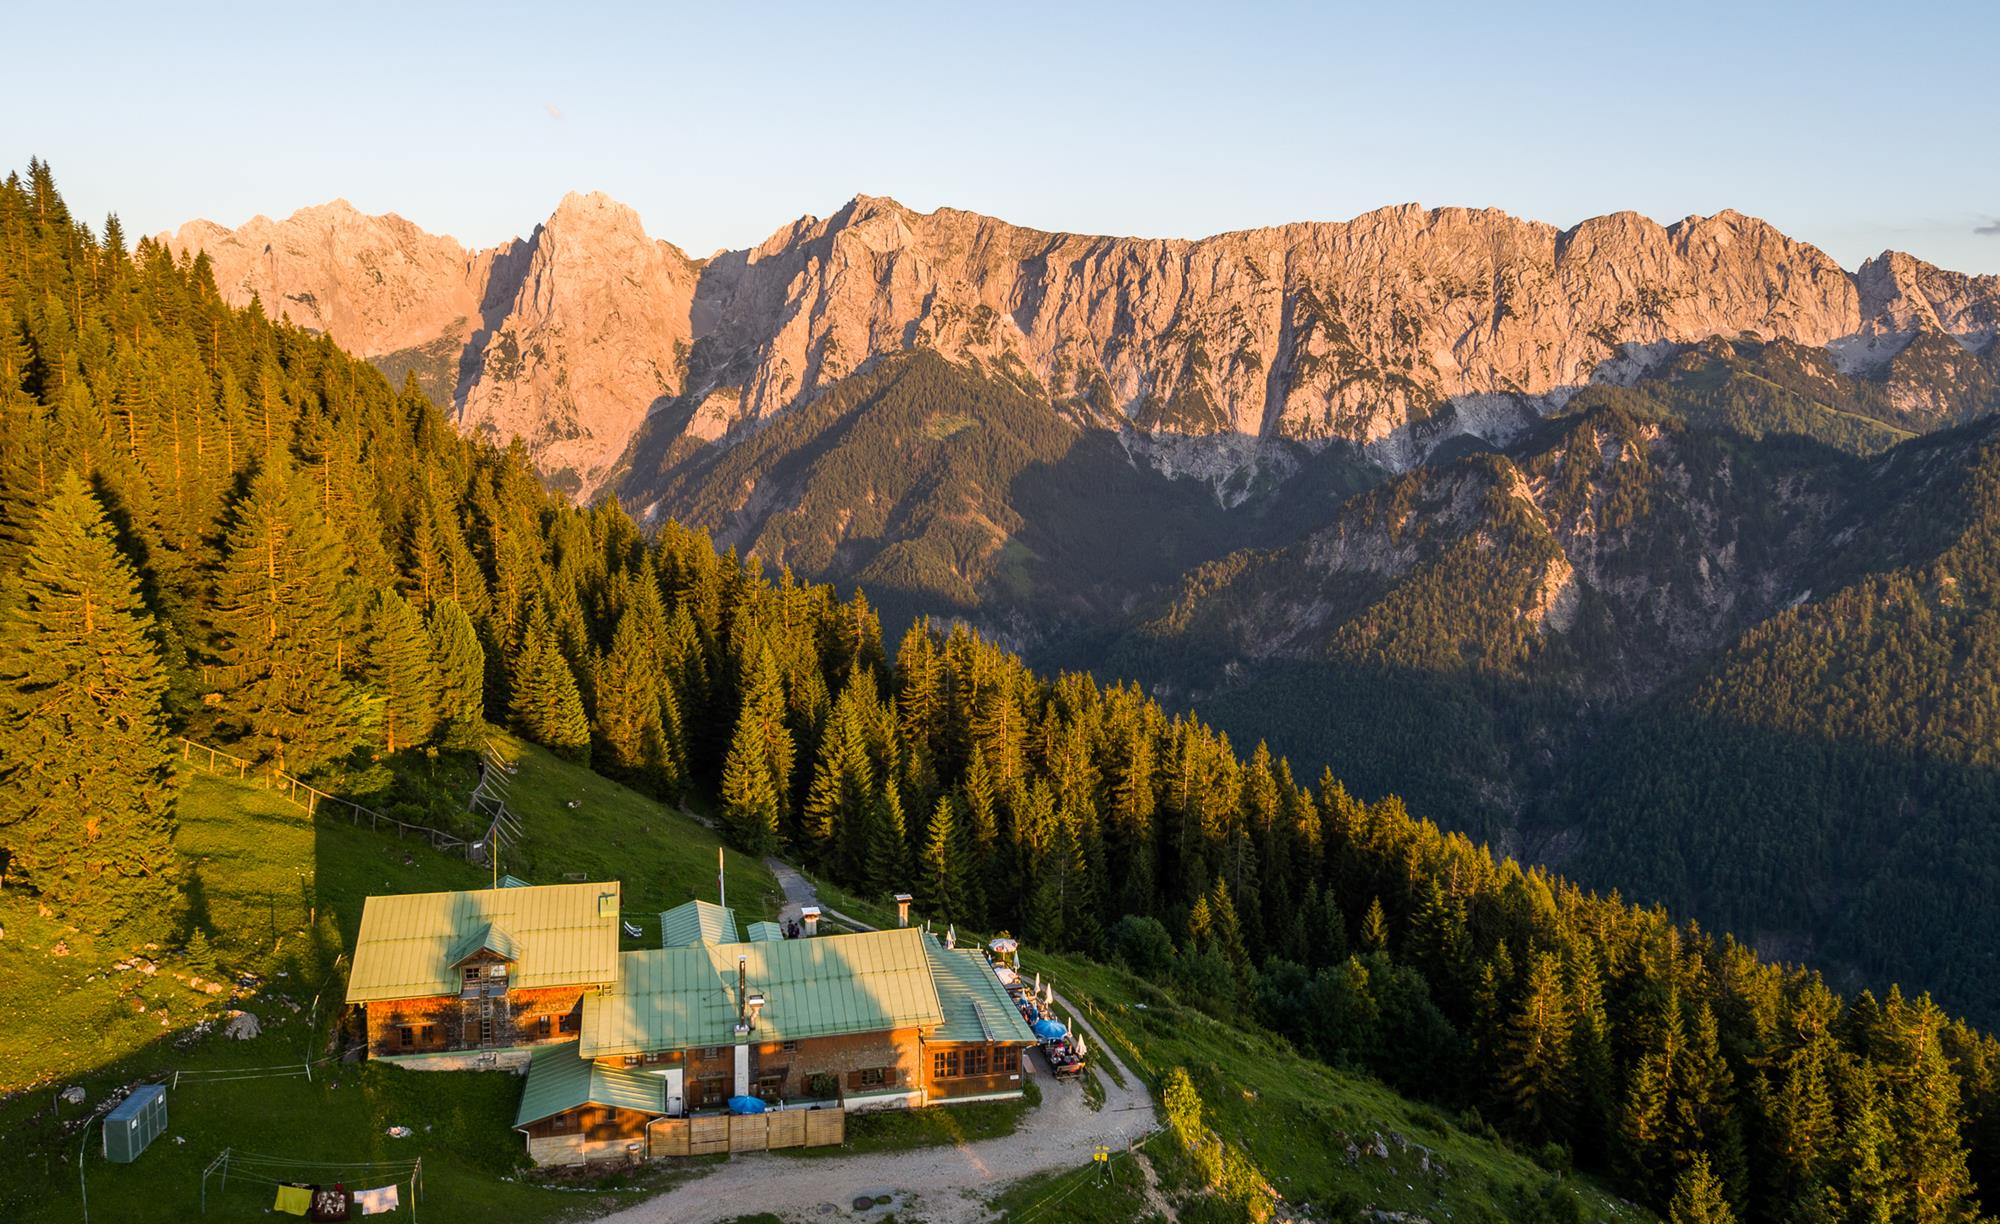 Die Alpenvereinshütte "Vorderkaiserfeldenhütte" bei Sonnenuntergang. Dahinter ein Waldstreifen sowie ein von rötlichem Licht beschienener felsiger Gebirgszug zu sehen.